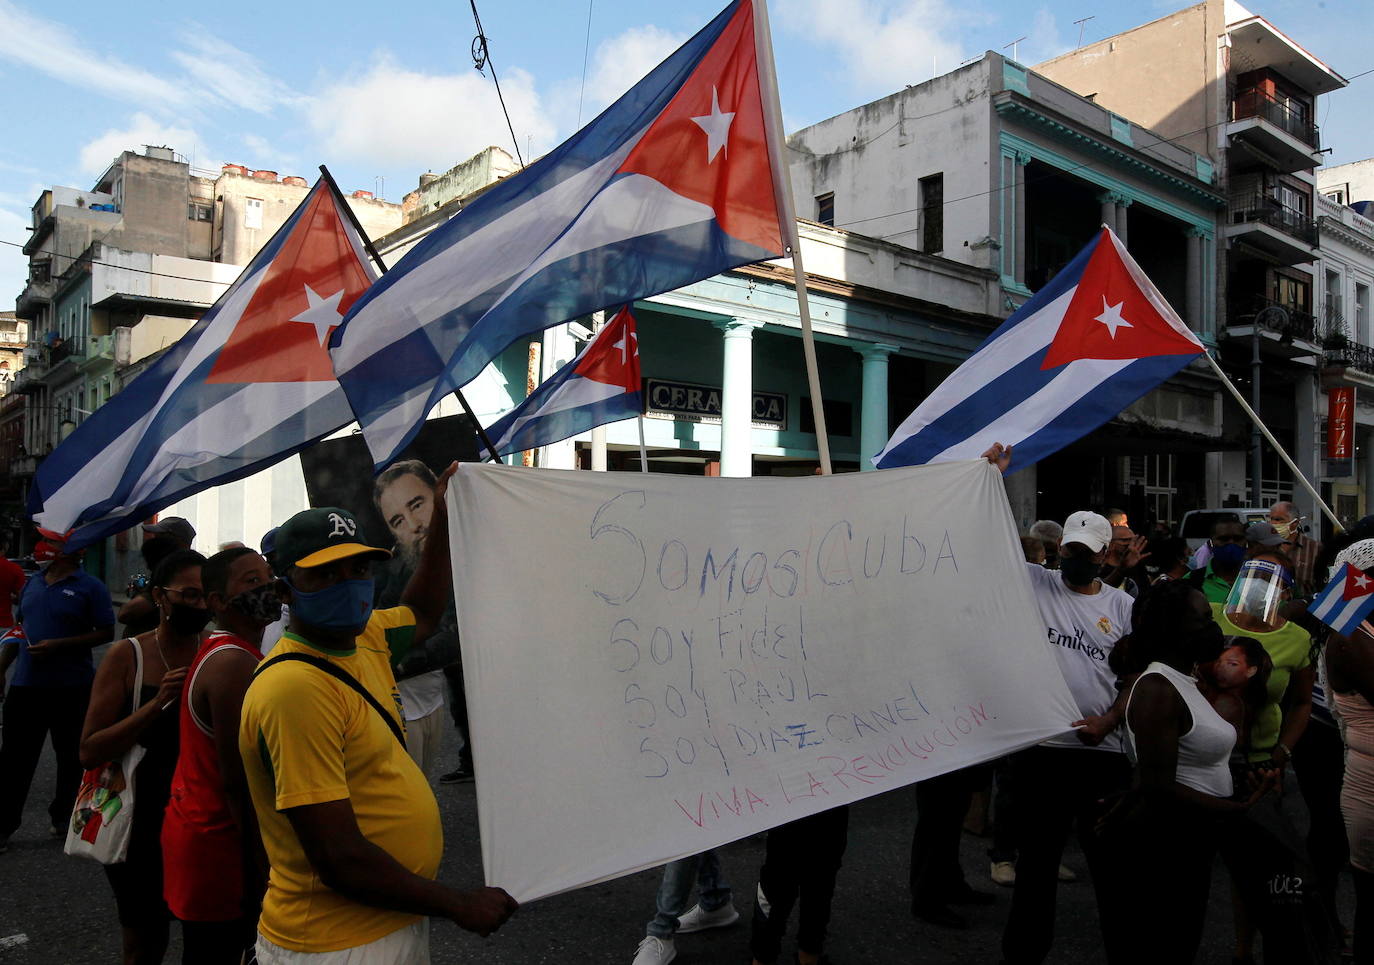 Fotos Las Protestas De Cuba En Imágenes El Correo 8551